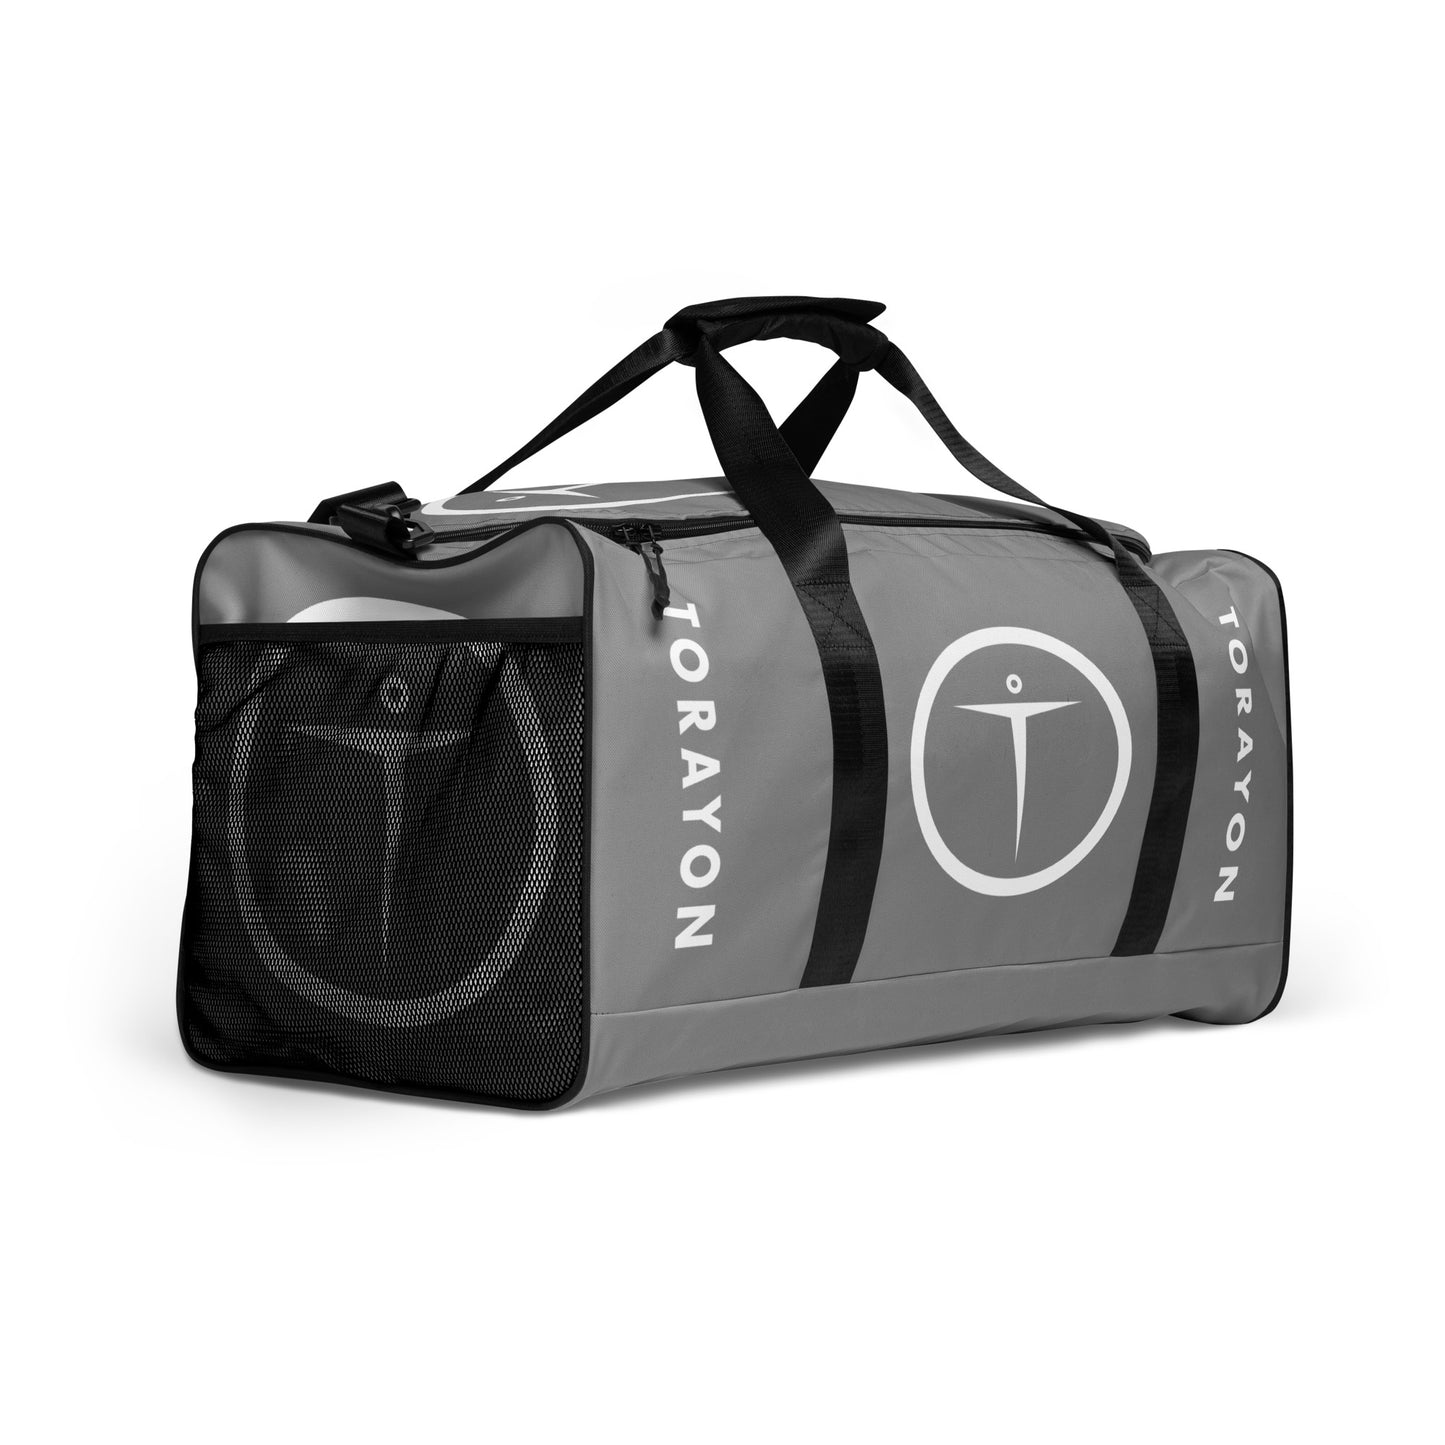 TORAYON Gray Duffle bag